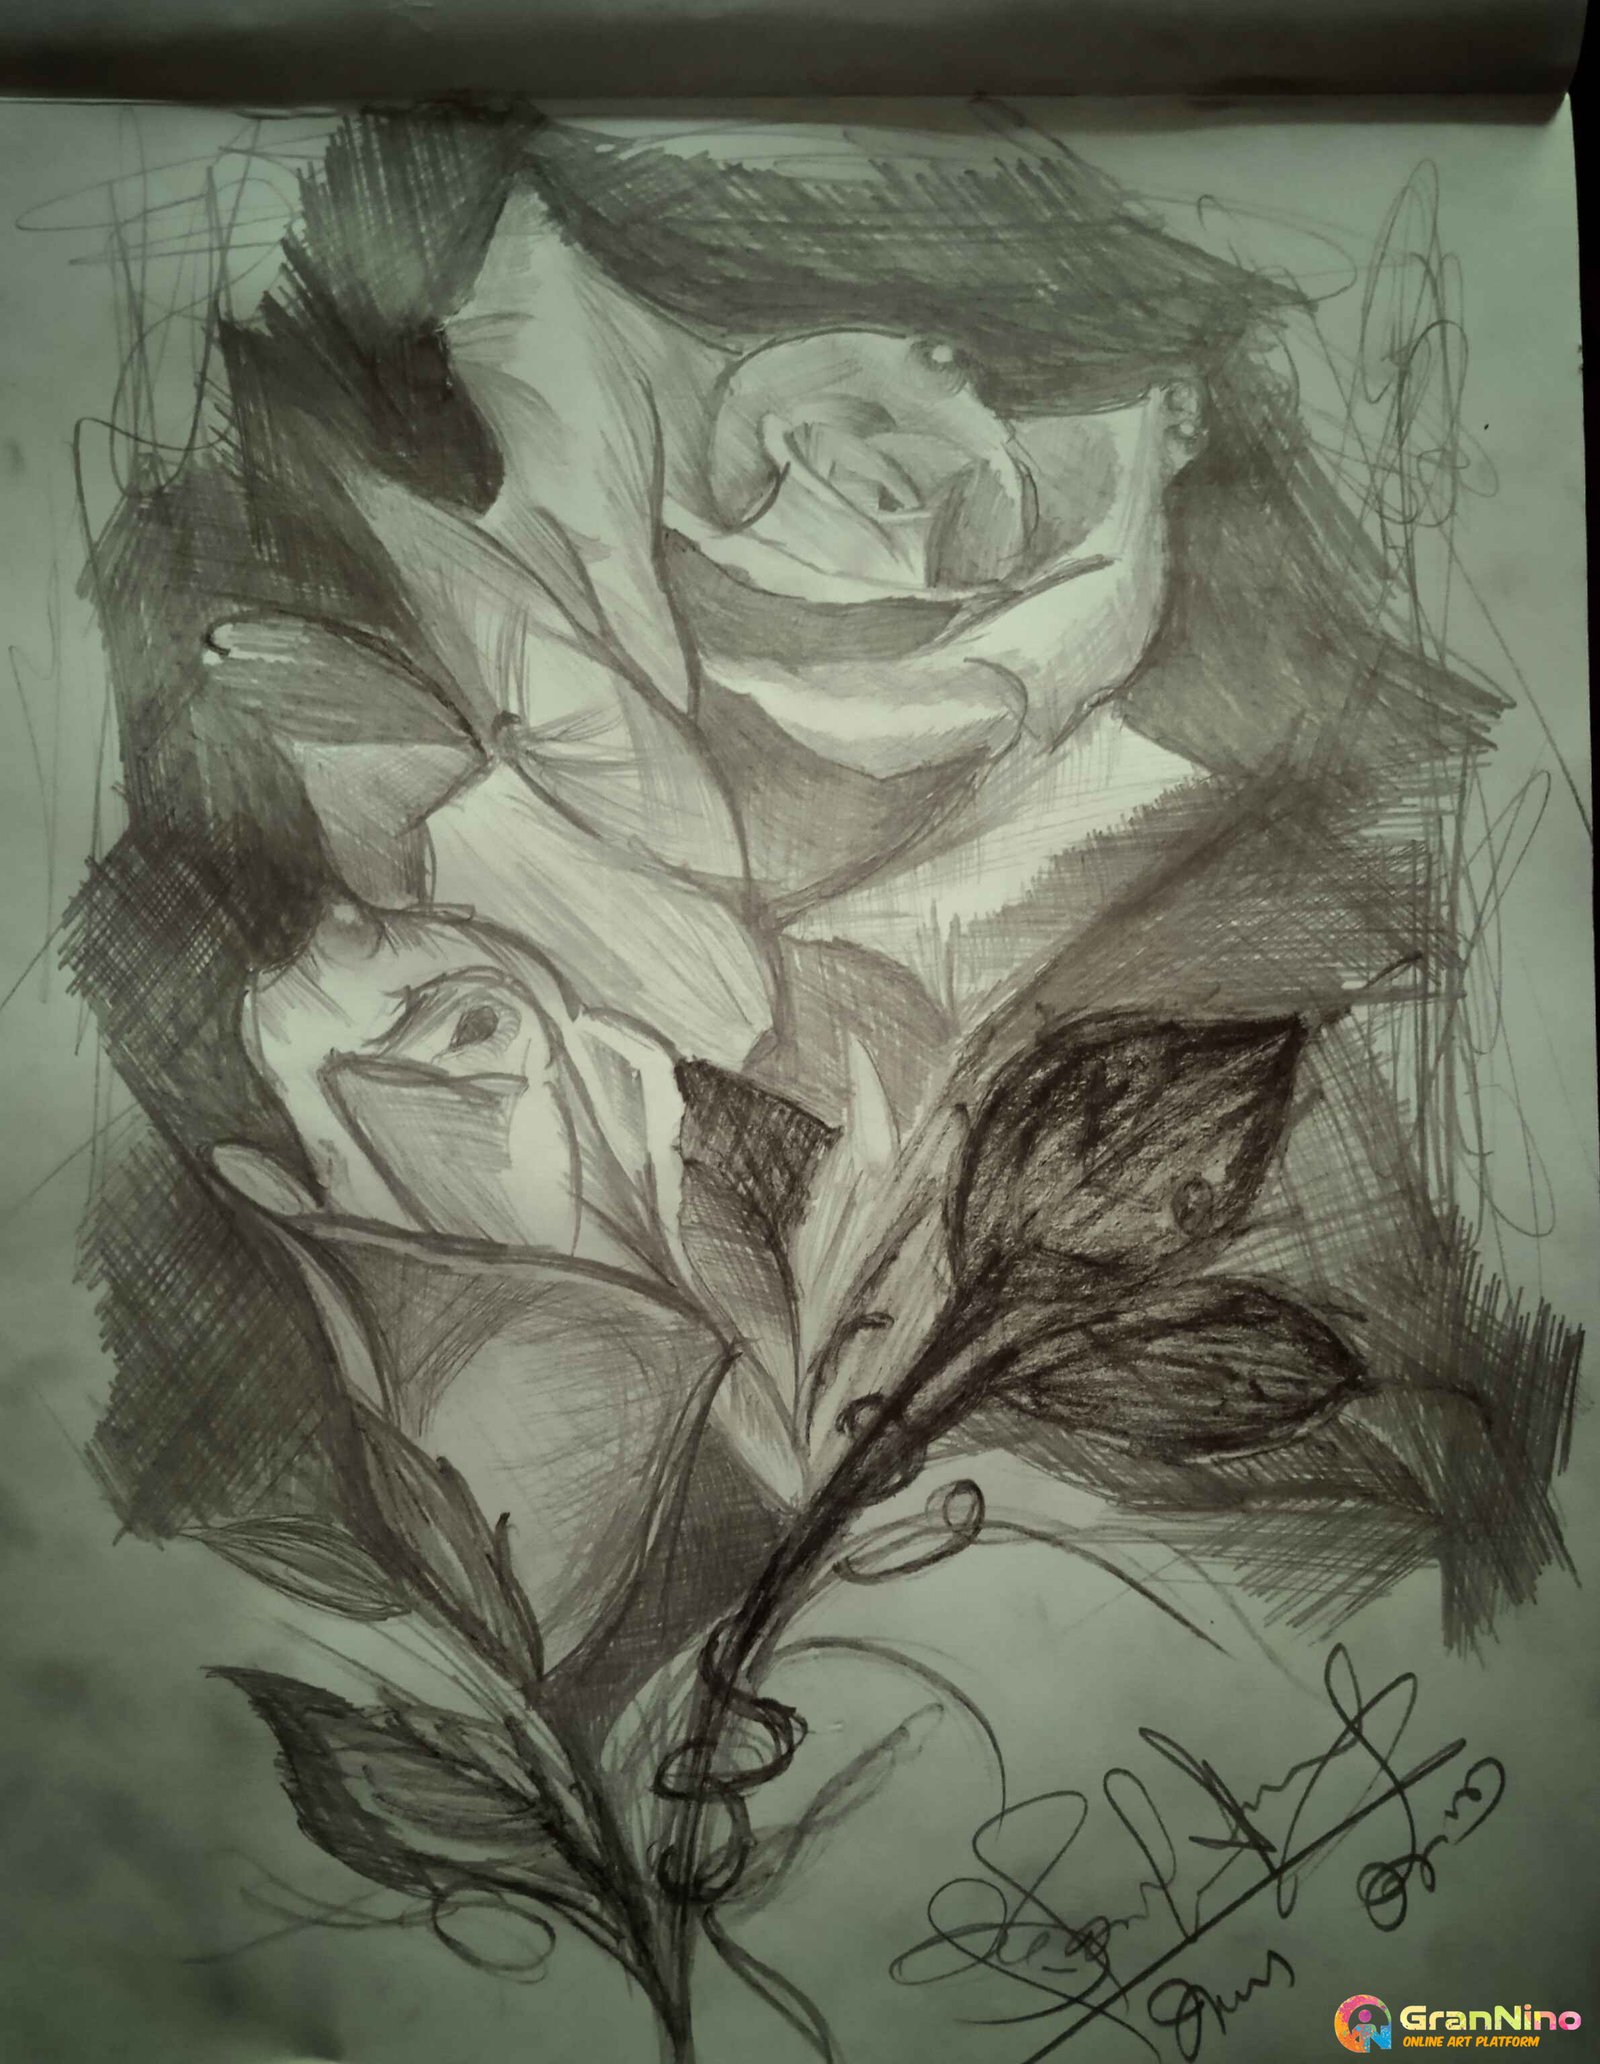 Gulab phool drawing || easy drawing tutorial || गुलाब का फूल कैसे बनाएँ ||  how to draw a rose, - YouTube